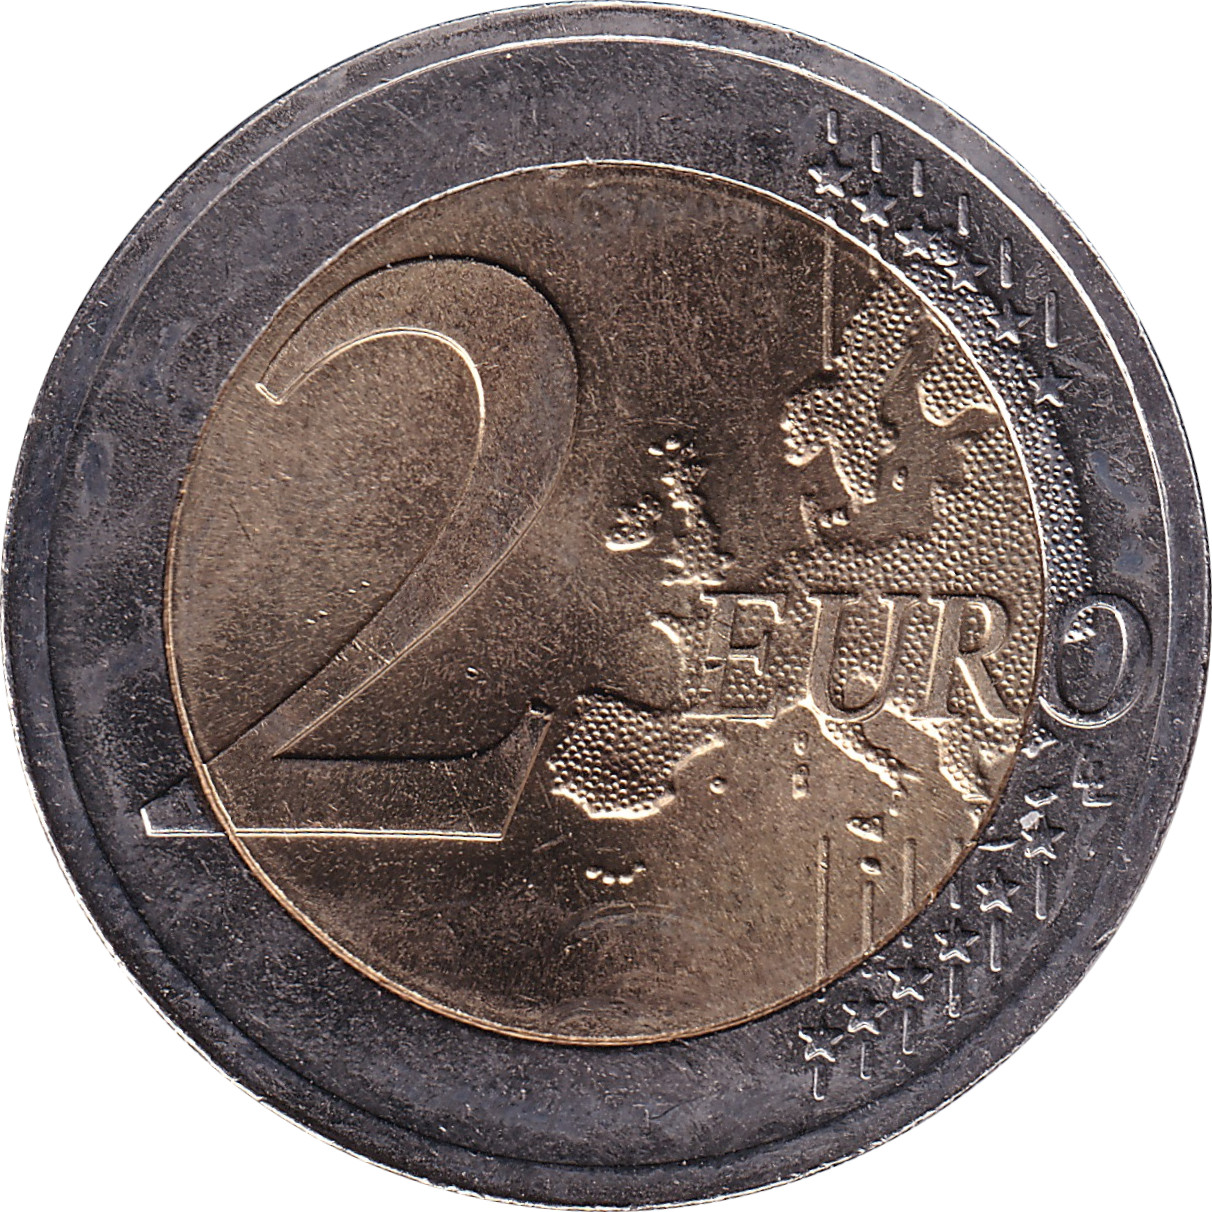 2 euro - Indépendance - 100 ans